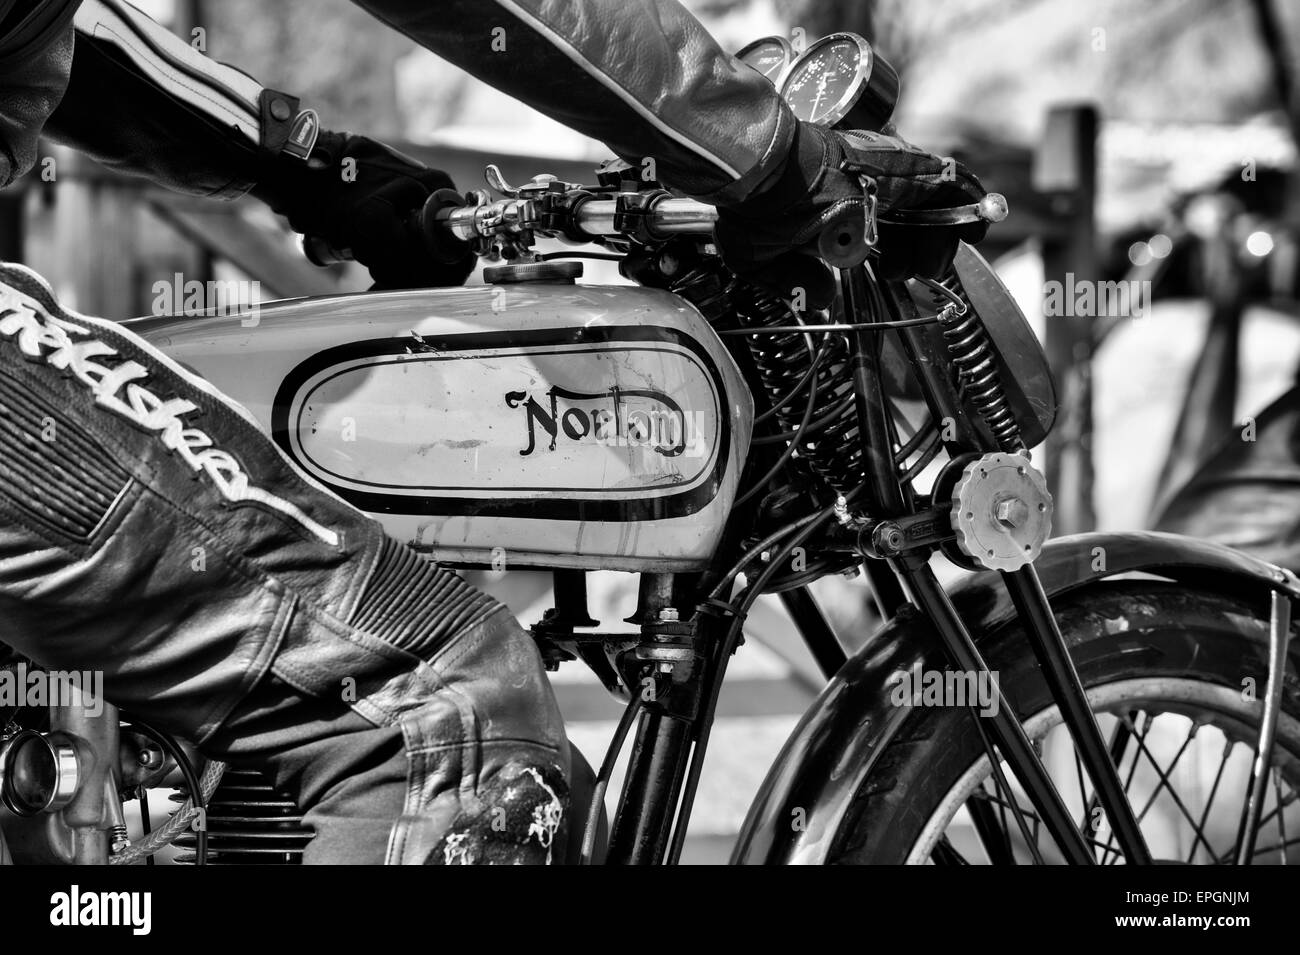 Biker sur une moto norton vintage. Le noir et blanc Banque D'Images